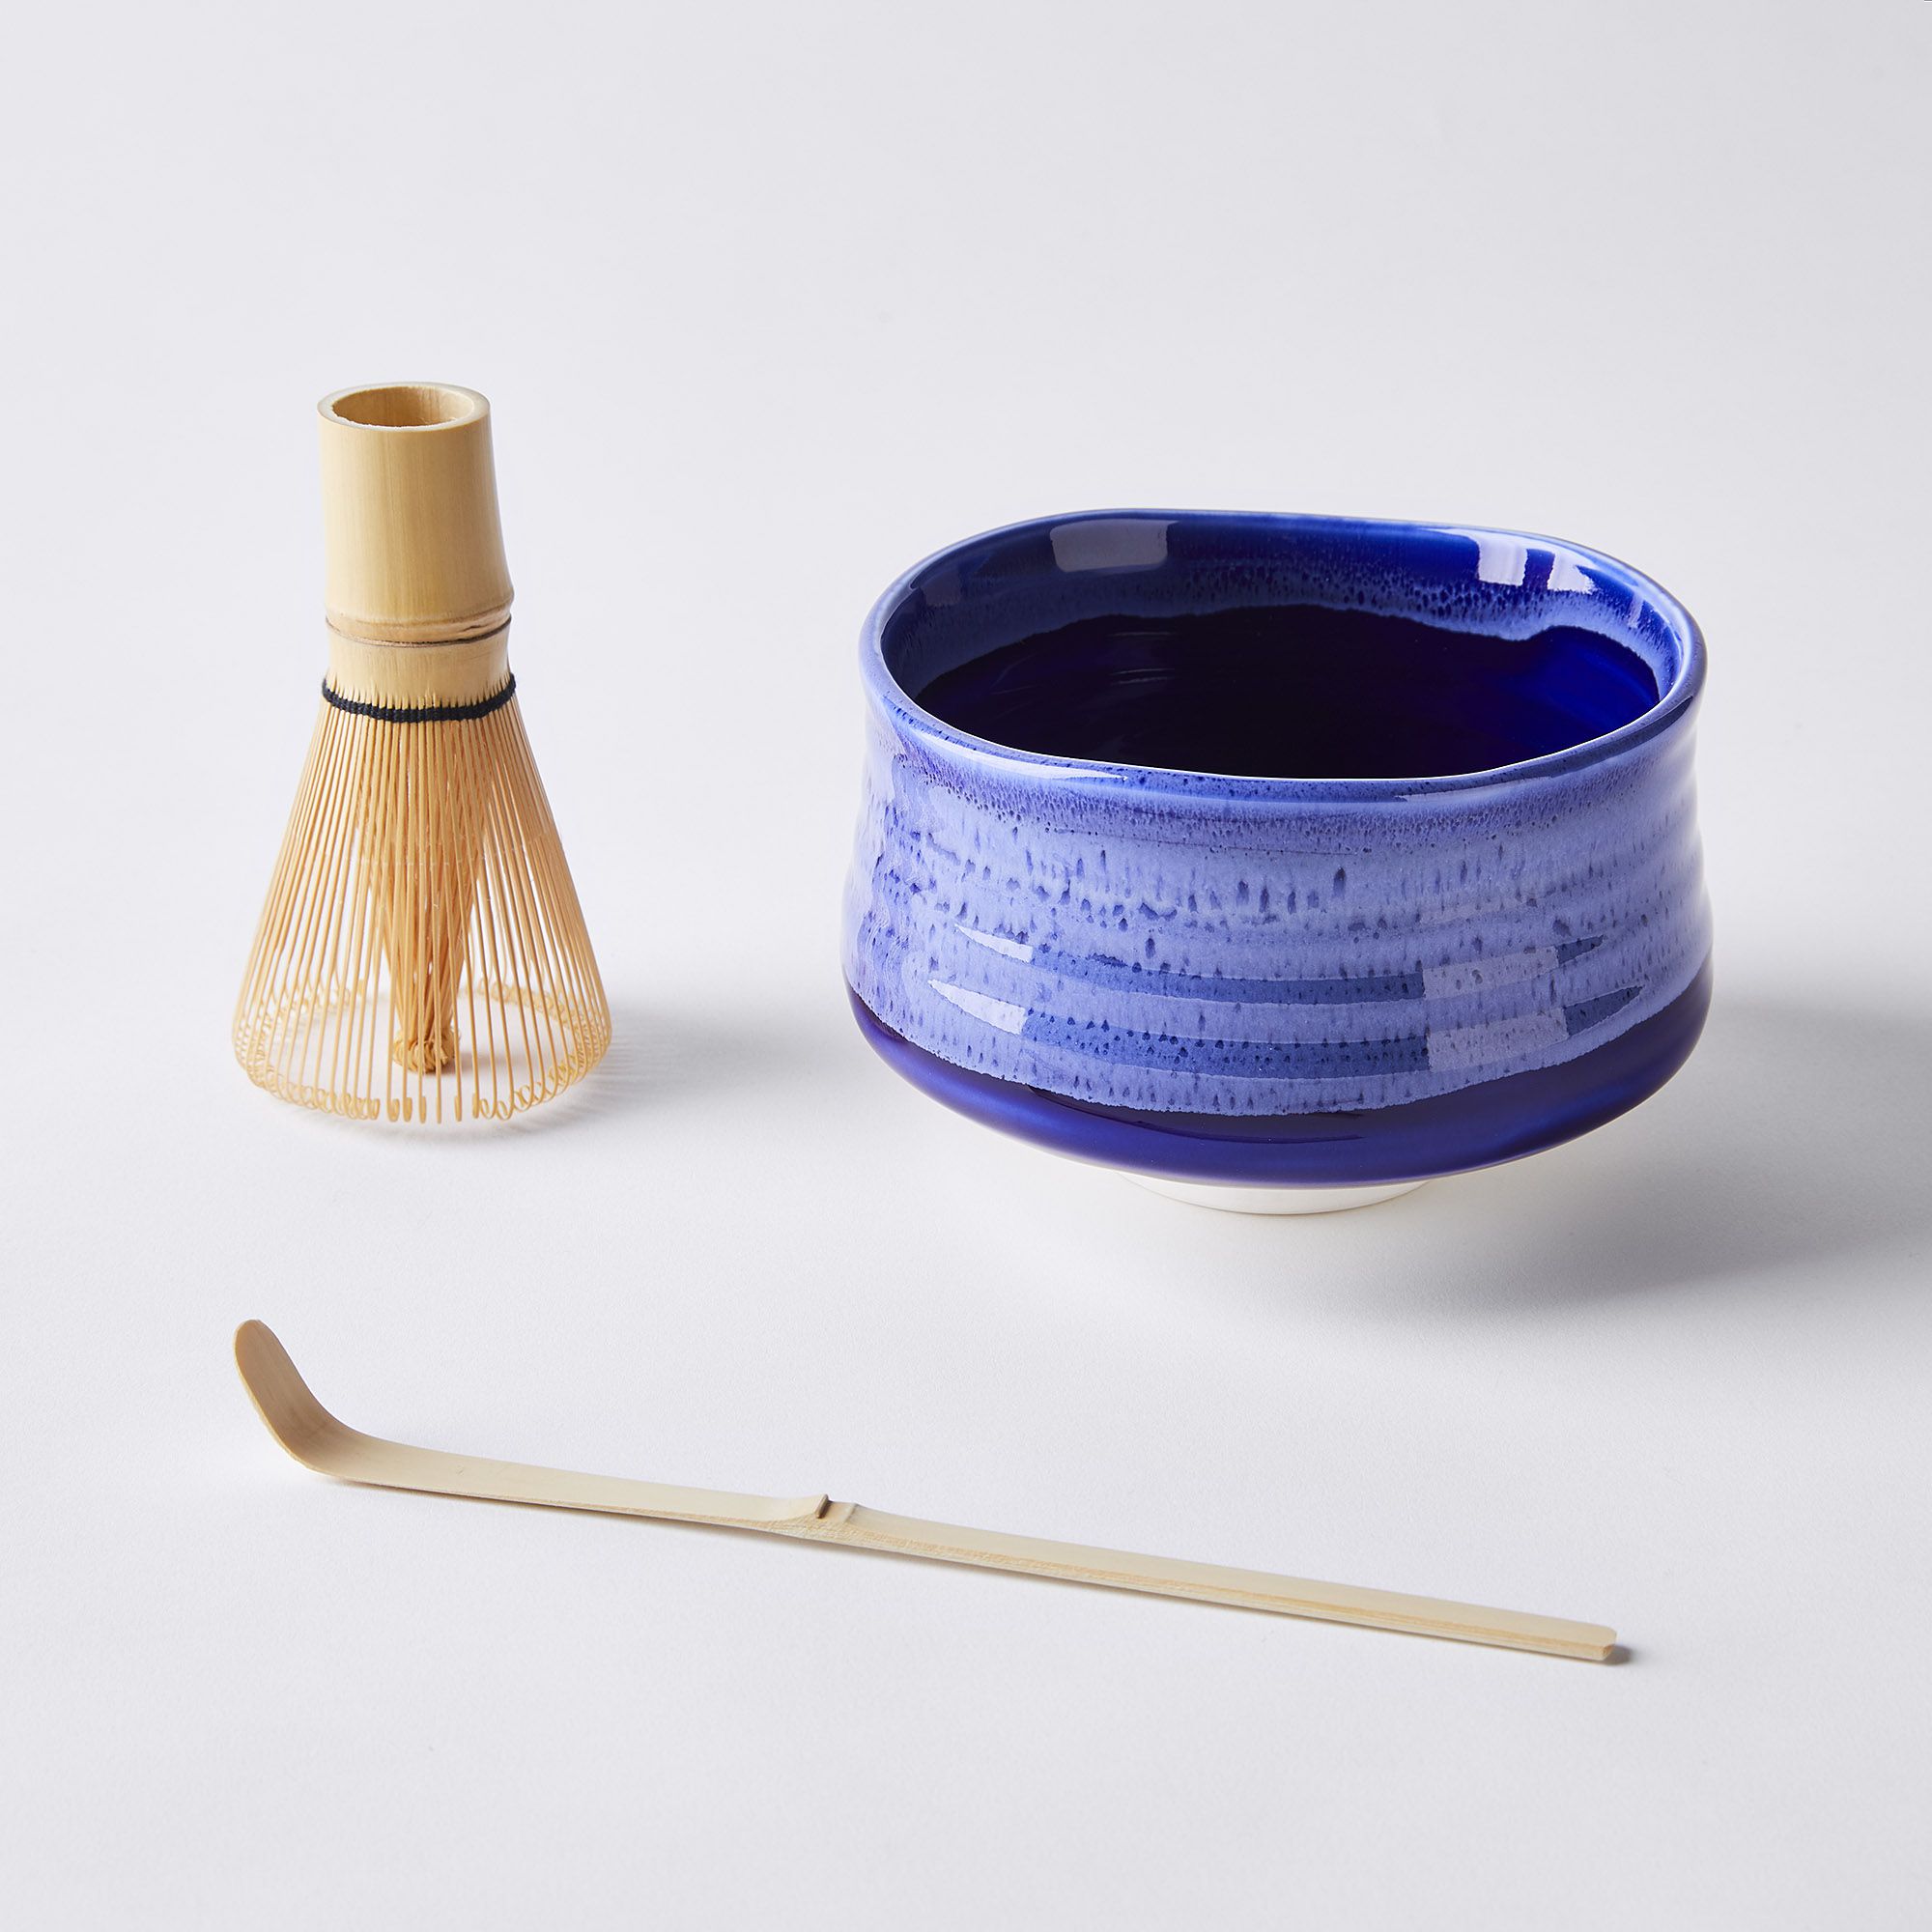 Palais des Thés Matcha Tea Set with Bamboo Scoop, Whisk & Ceramic